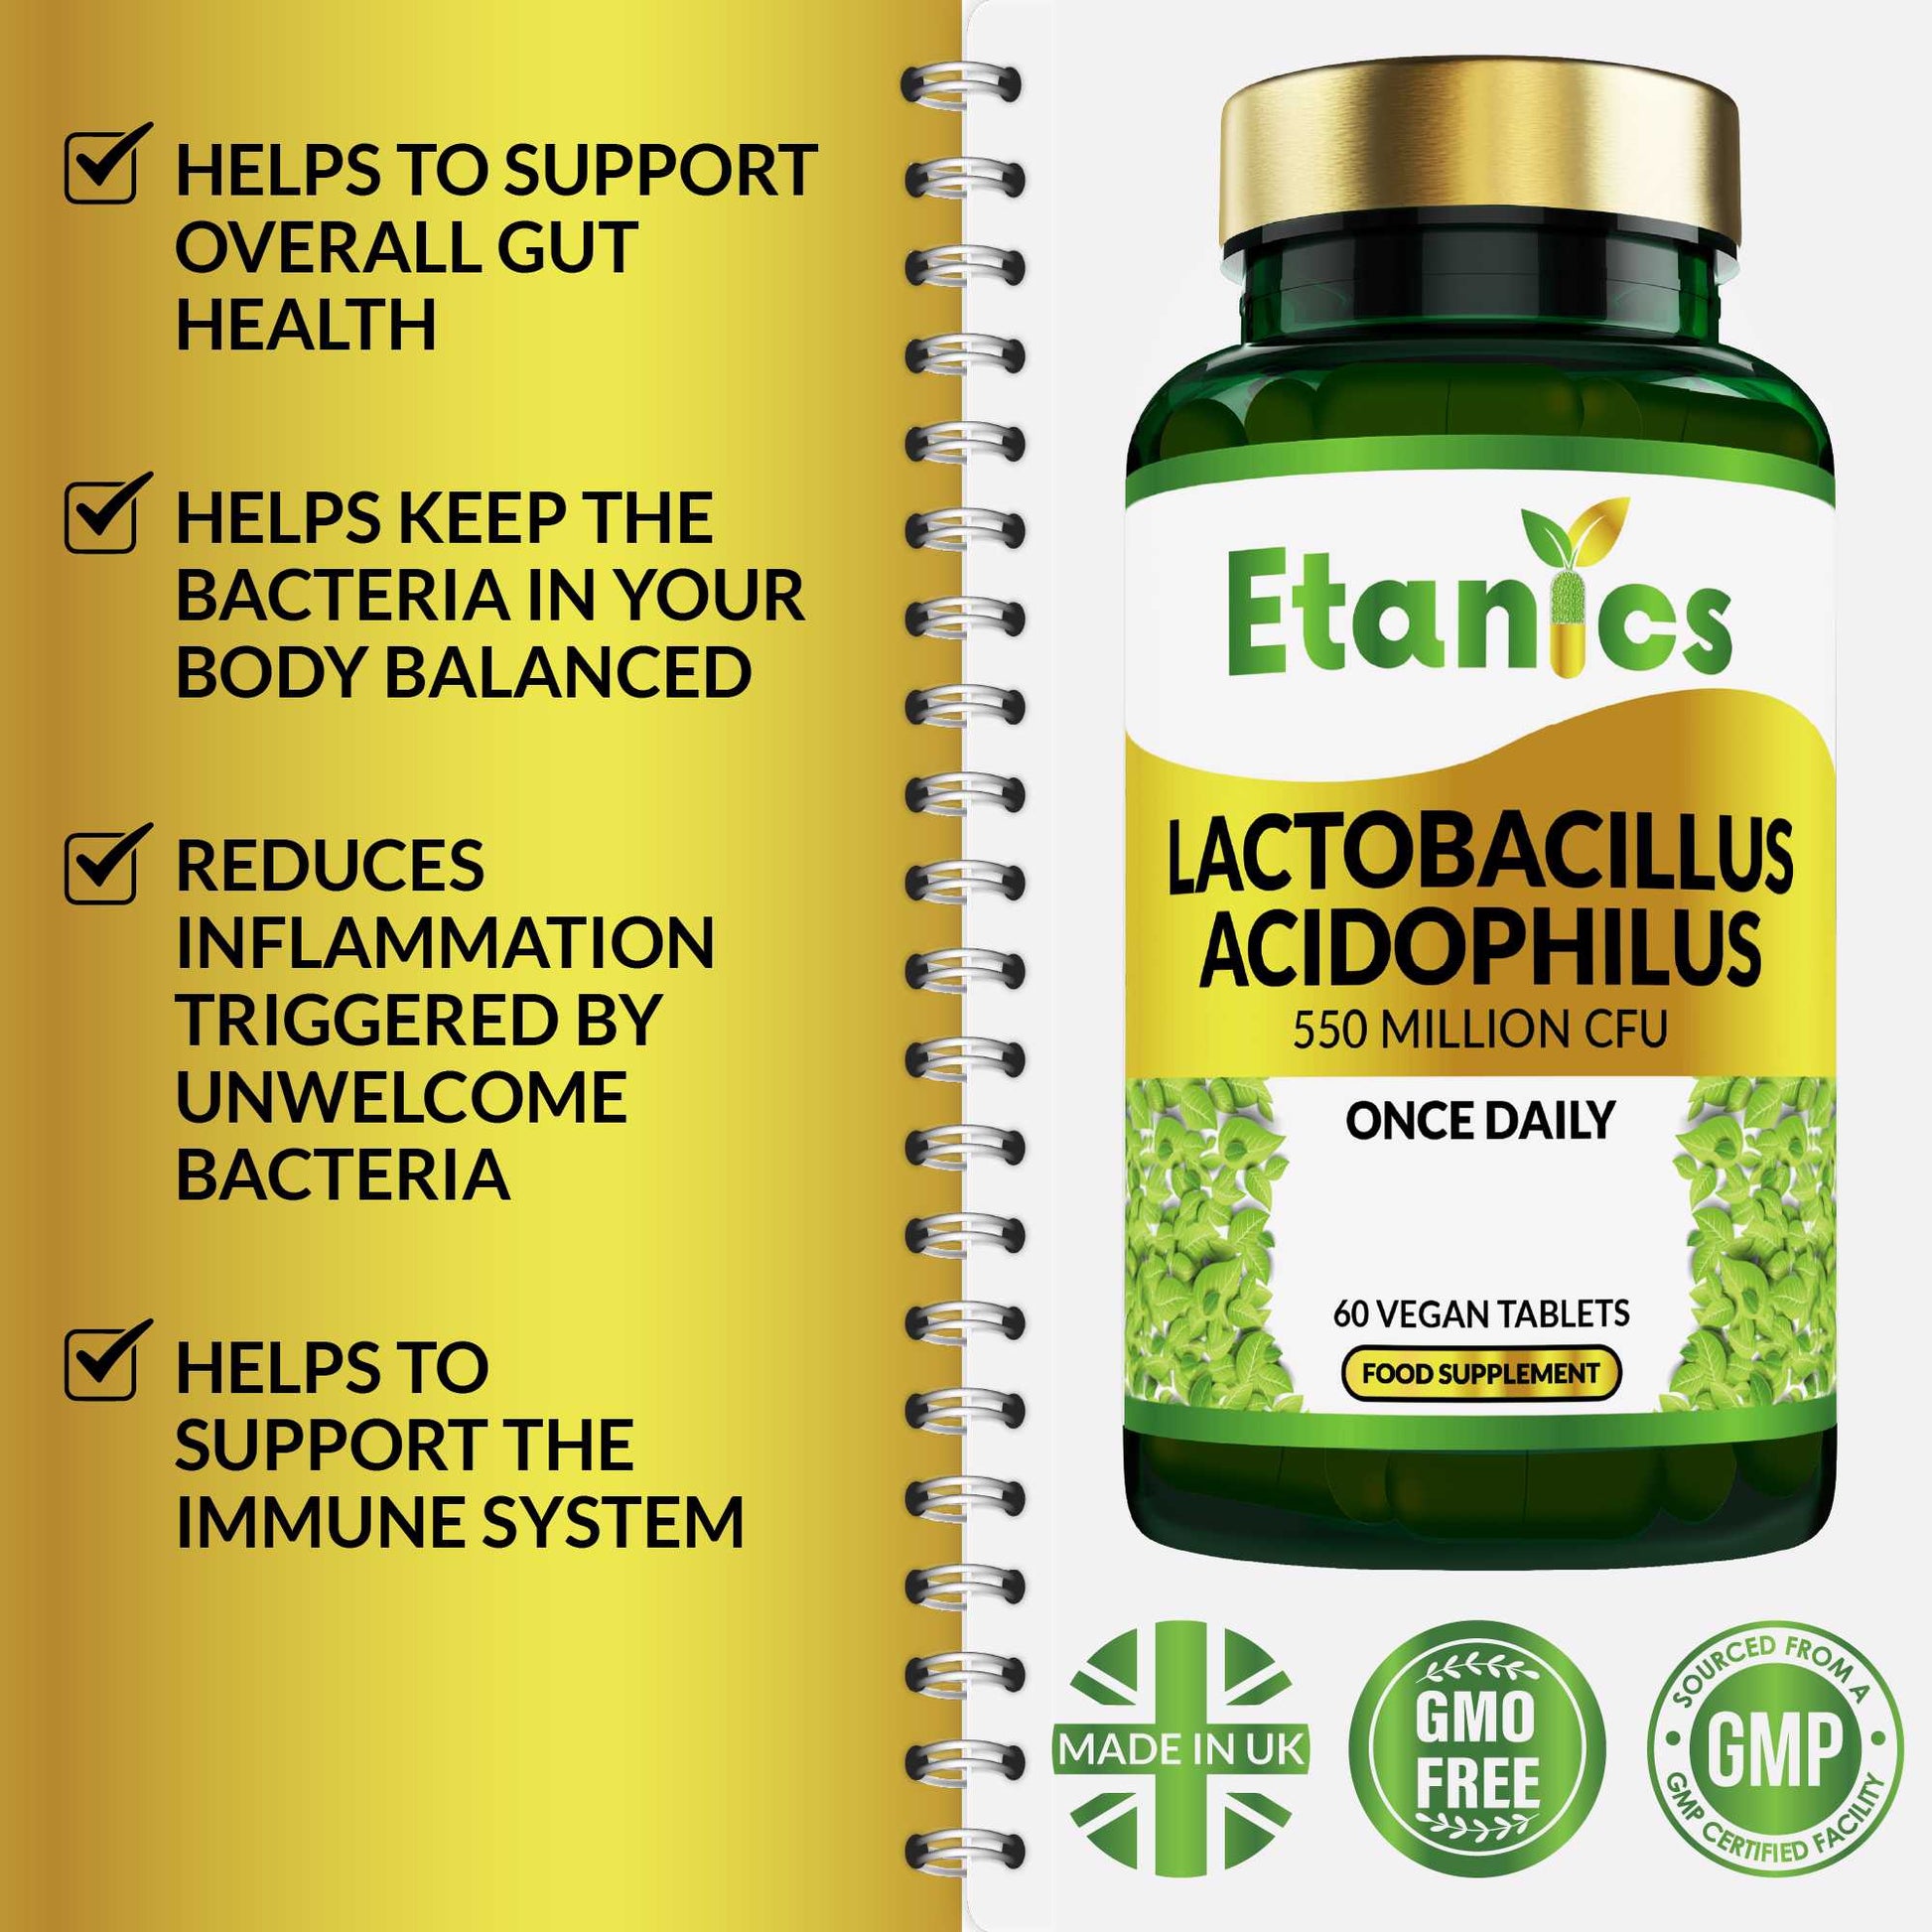 Etanics Lactobacillus Acidophilus Probiotic Vegan Supplement With Benefits